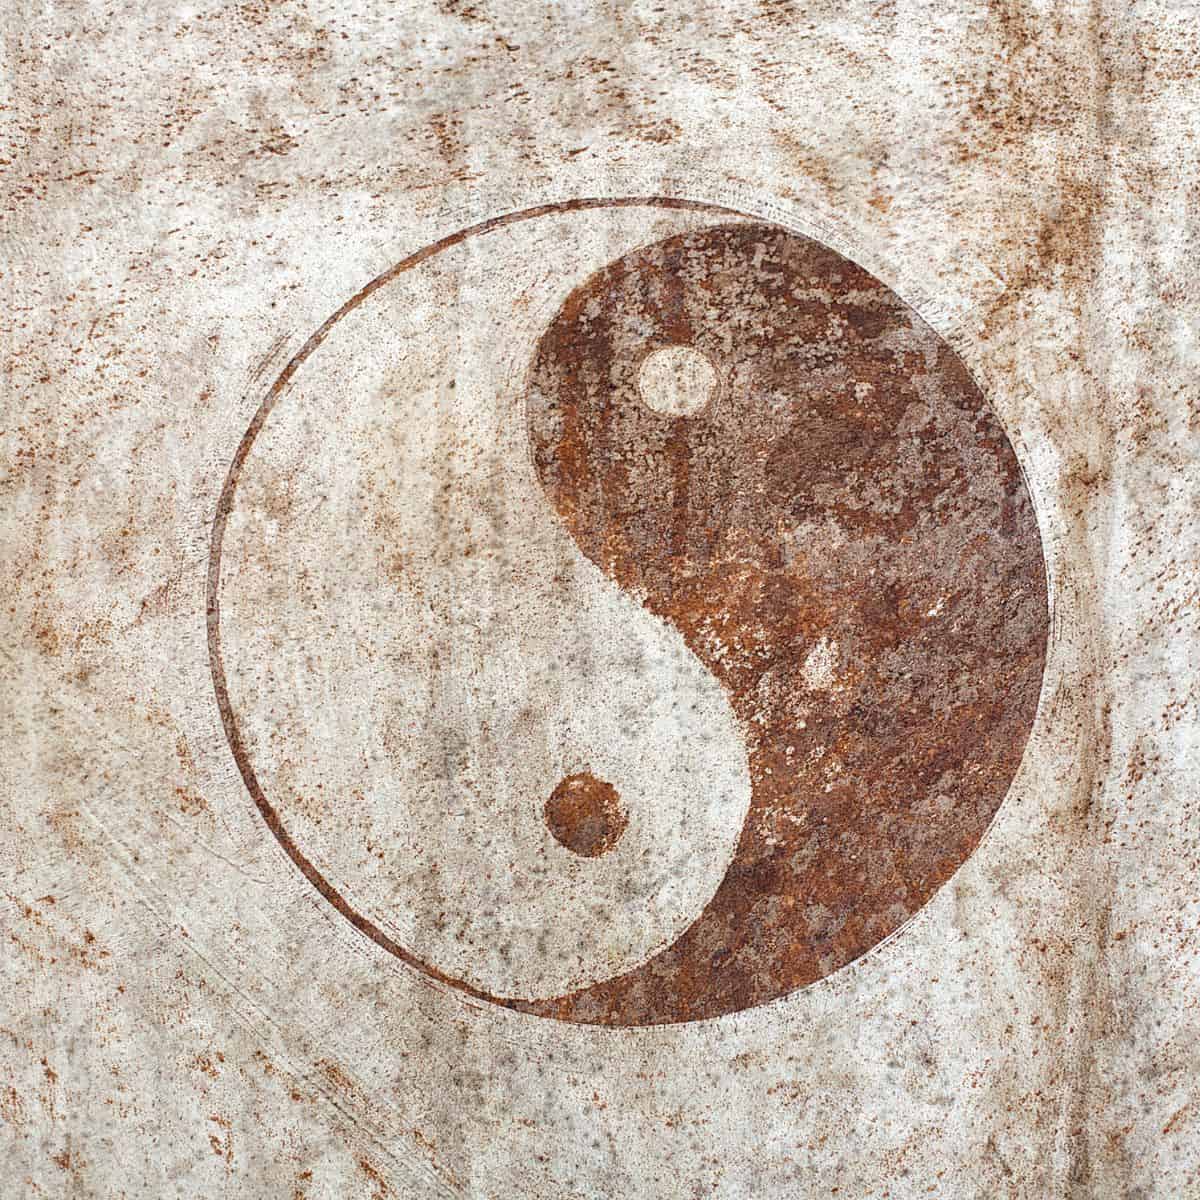 yin yang symbol.